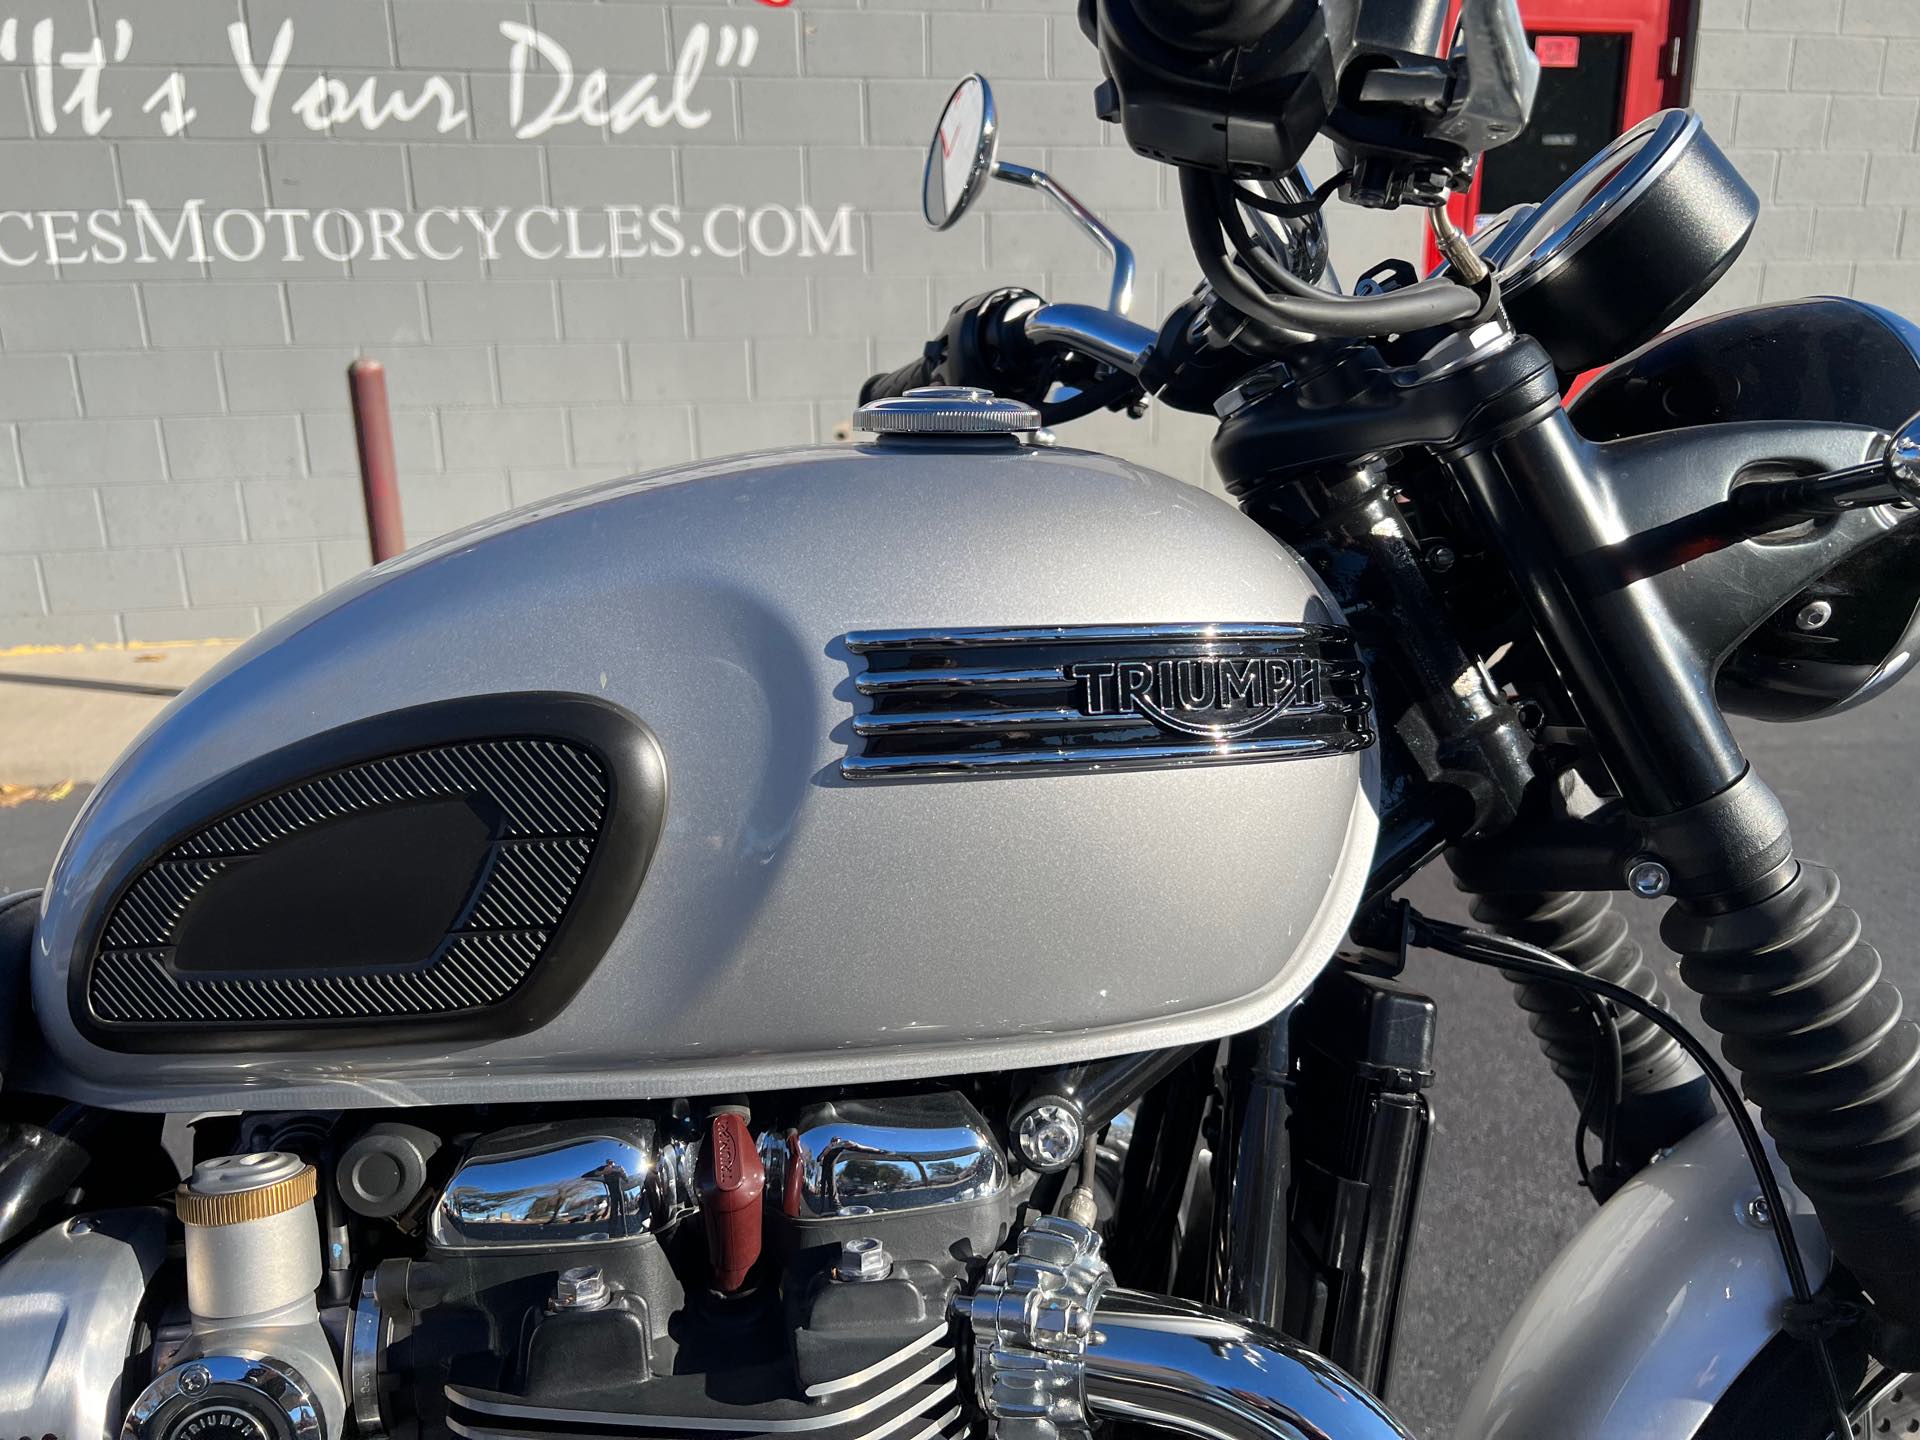 2018 Triumph Bonneville T120 Base at Aces Motorcycles - Fort Collins